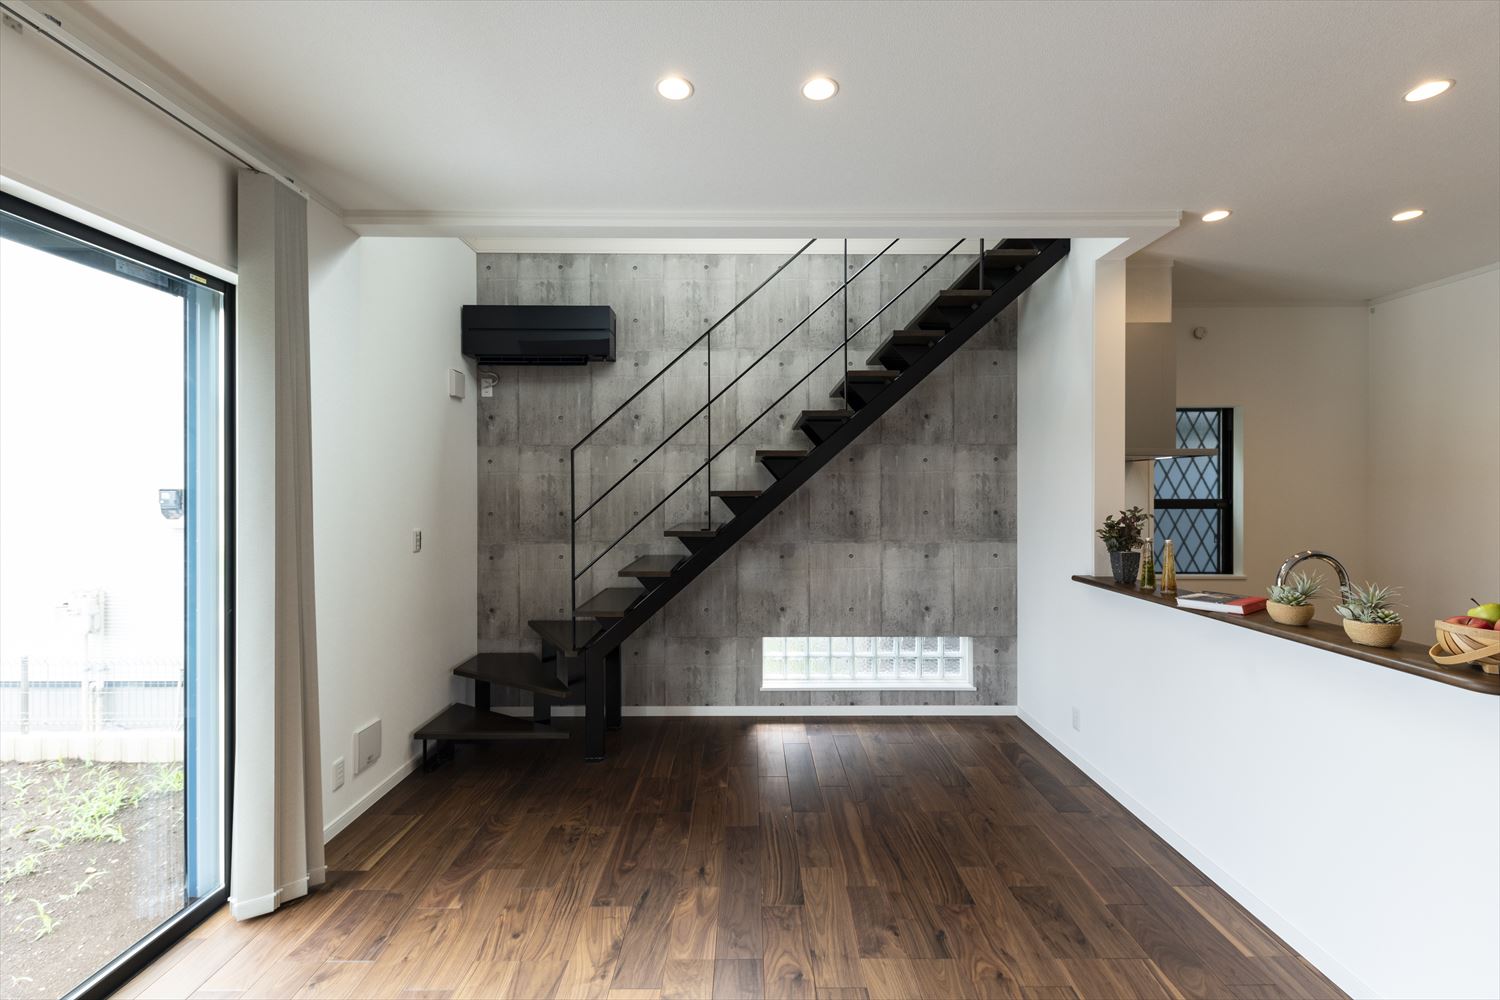 デザイン性の高い黒のスリット階段。コンクリート打ち放し風のクロスと合わせることでインダストリアルな雰囲気に。